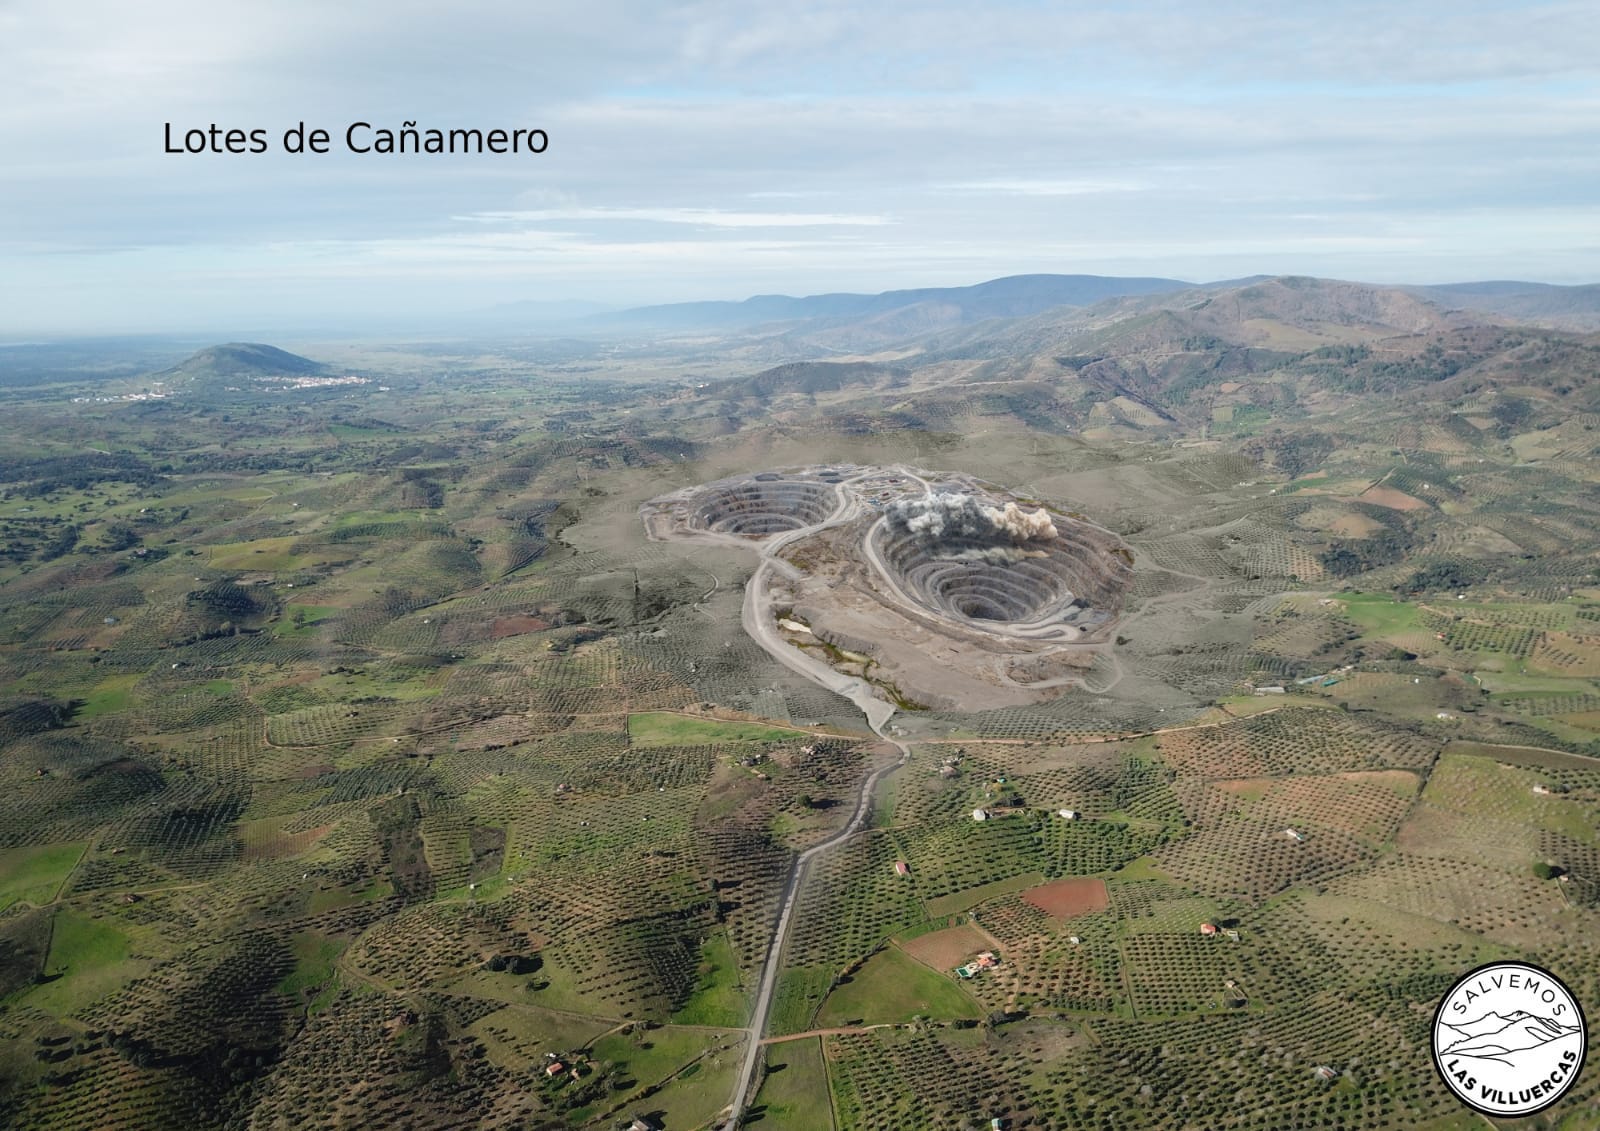 Lotes-de-Cañamero-mineras La Plataforma Salvemos Las Villuercas defiende el Geoparque contra las empresas mineras